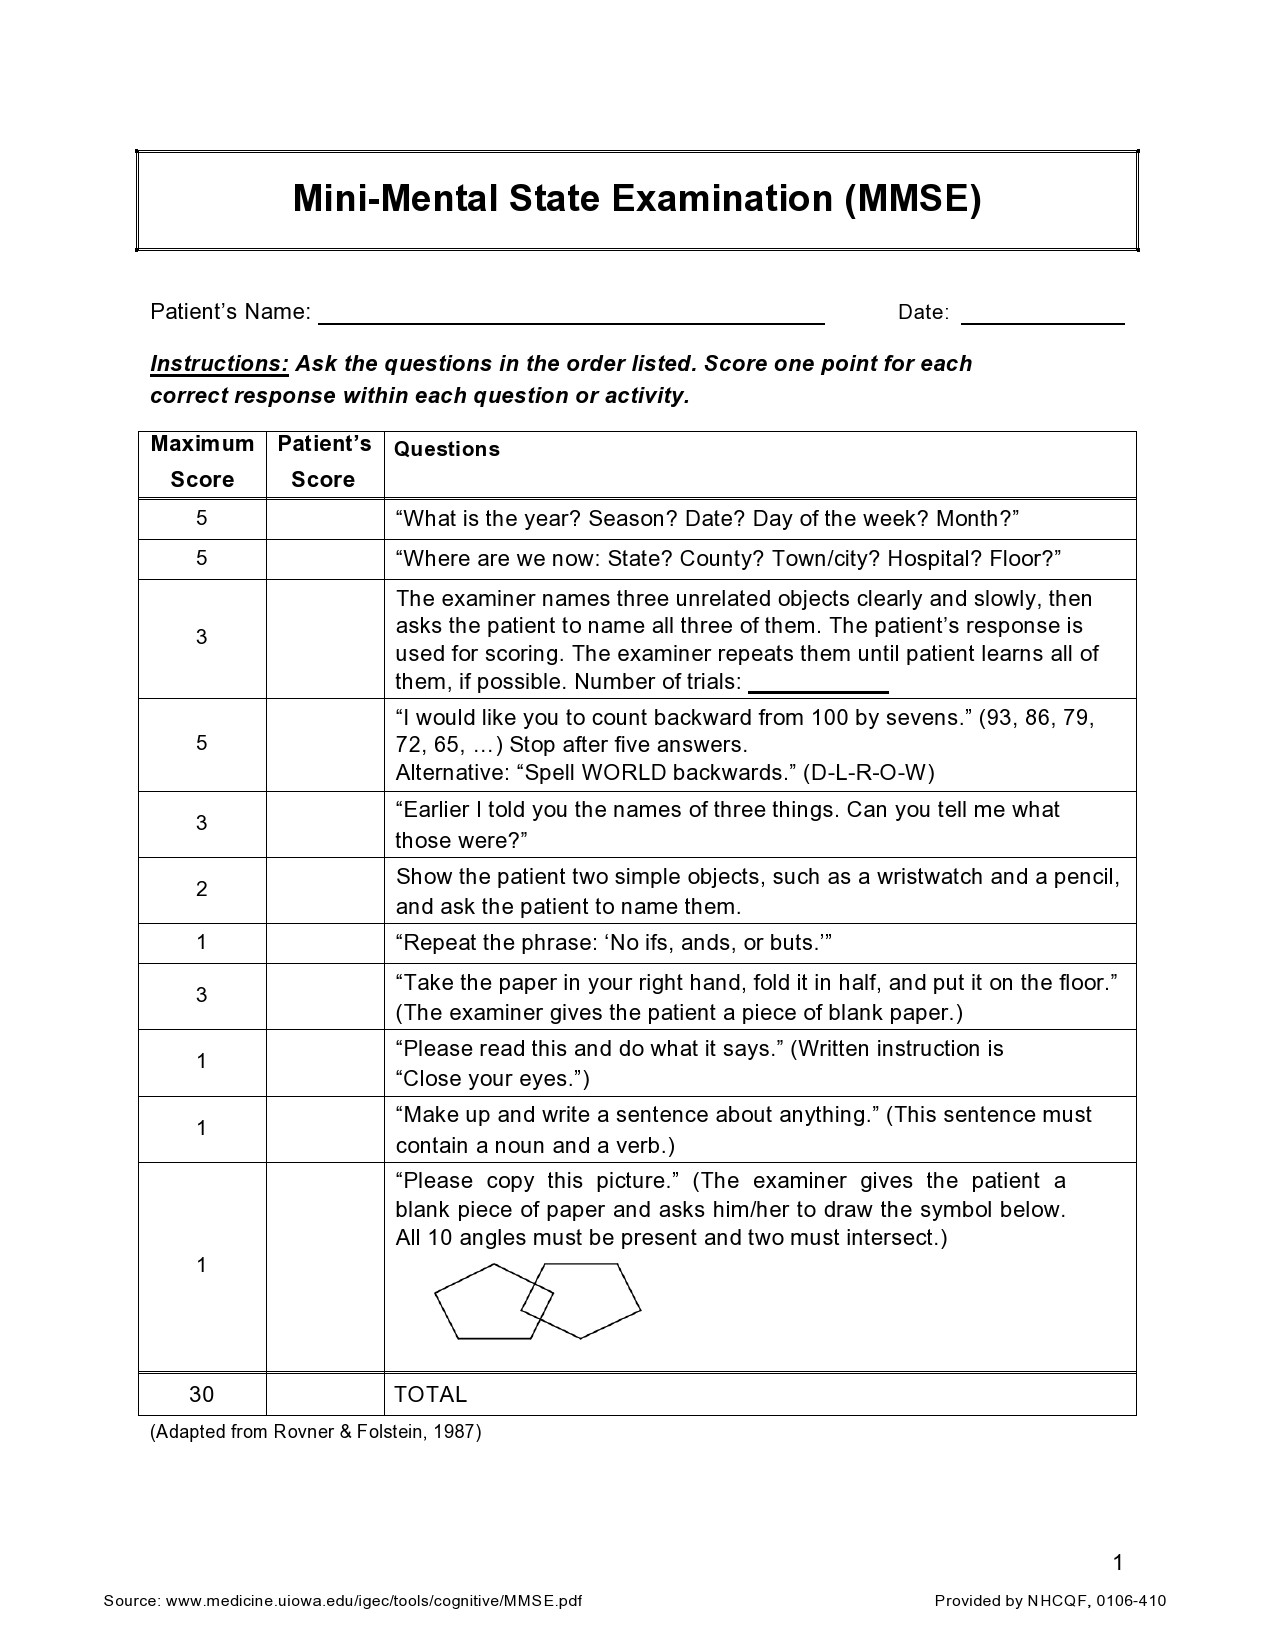 Mini Mental Status Examination Printable